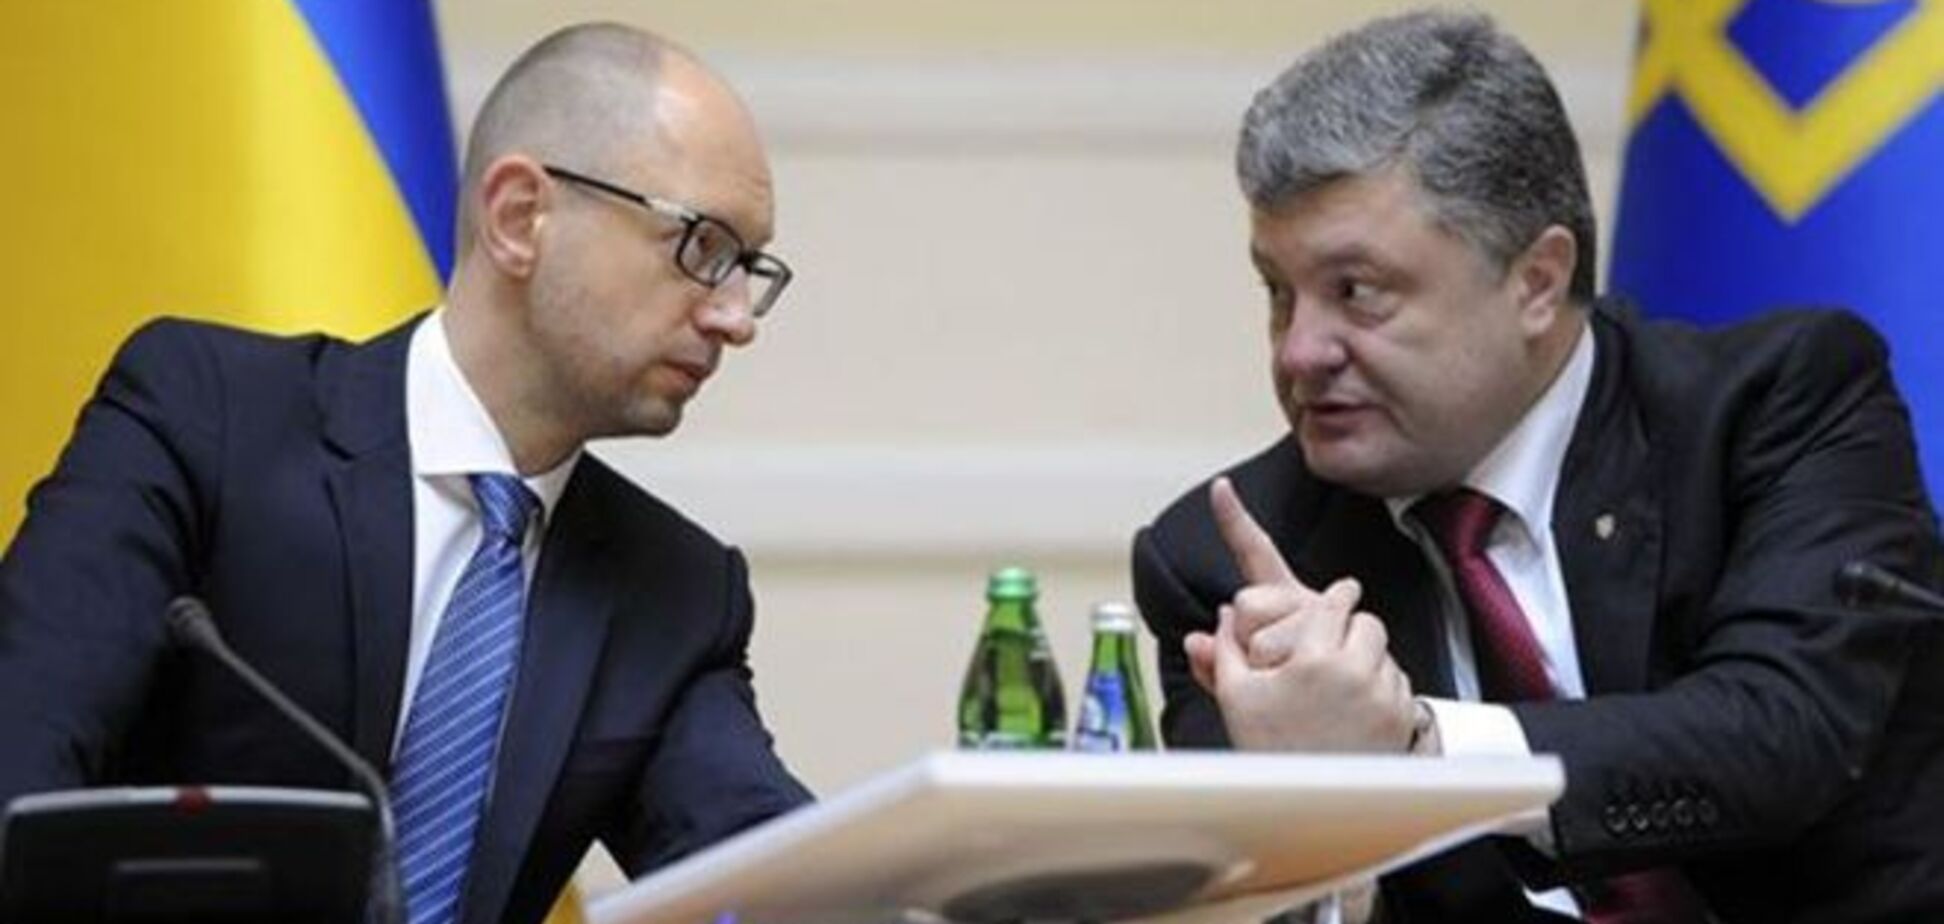 Коалиция обсудит с Порошенко 'внутренние противоречия'